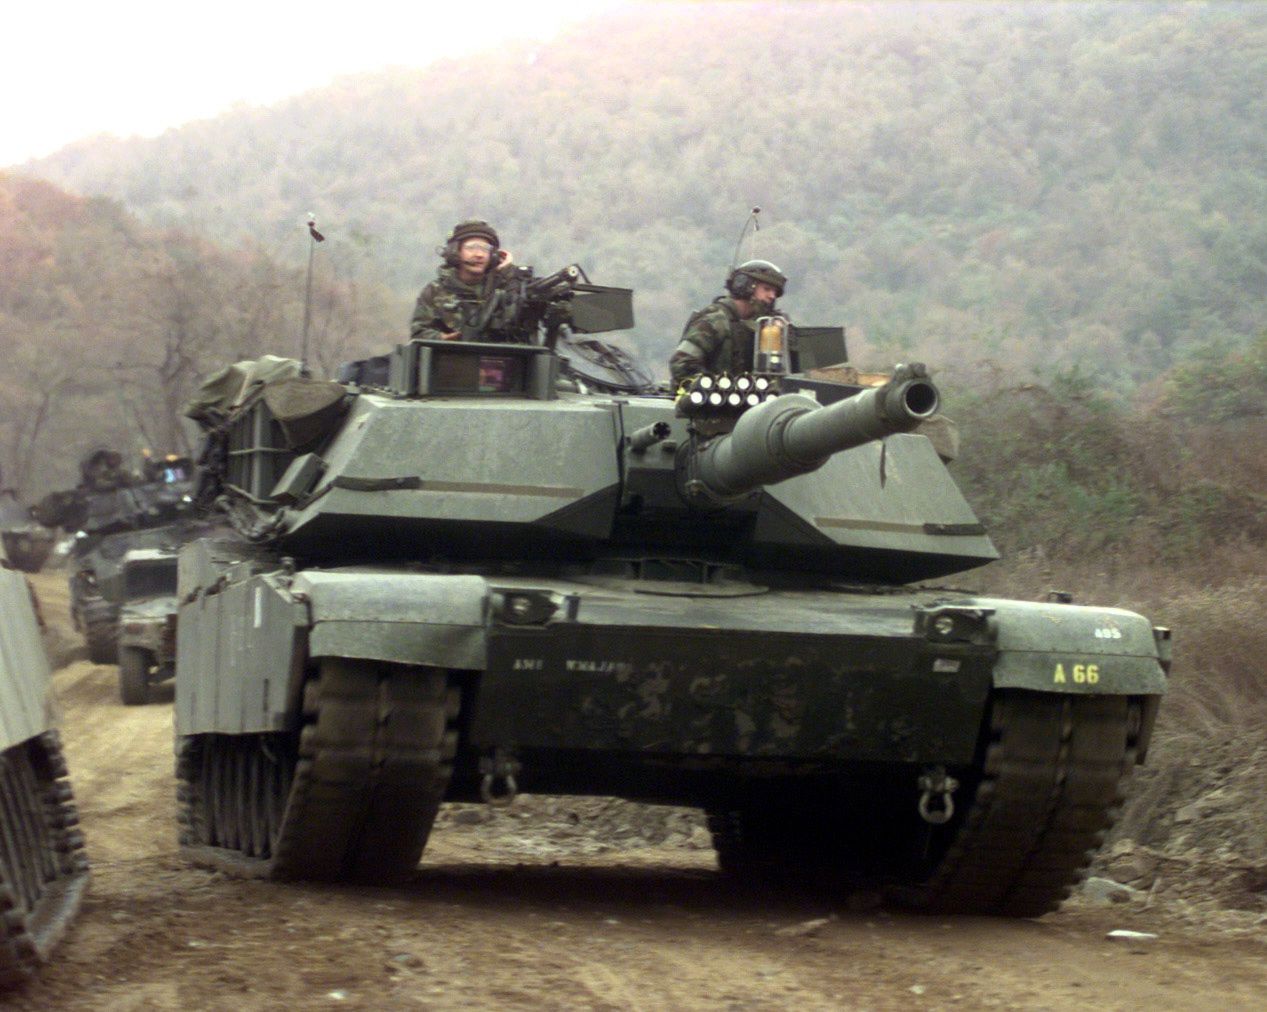 MON kupi 250 sztuk? M1A2 Abrams: Czołg, który nie nadaje się dla Polski [OPINIA]